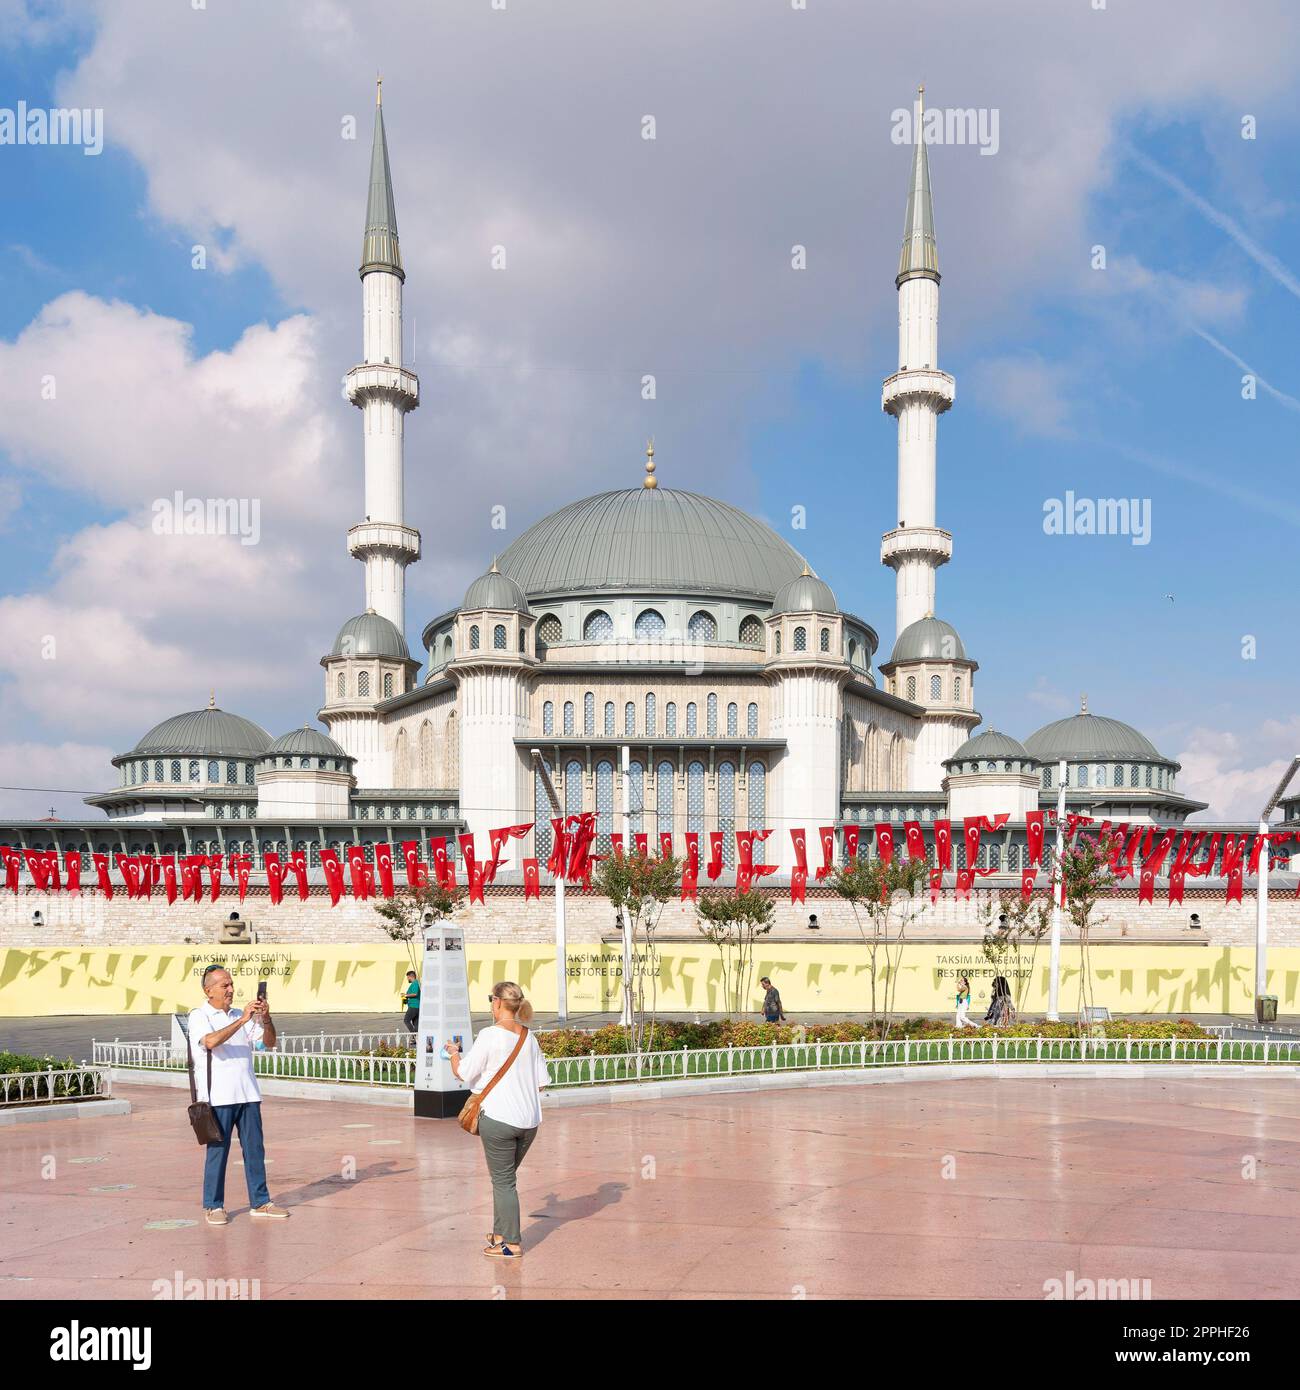 Turistas tomando fotos frente a la mezquita de Taksim, en la plaza de Taksim, Estambul, Turquía Foto de stock